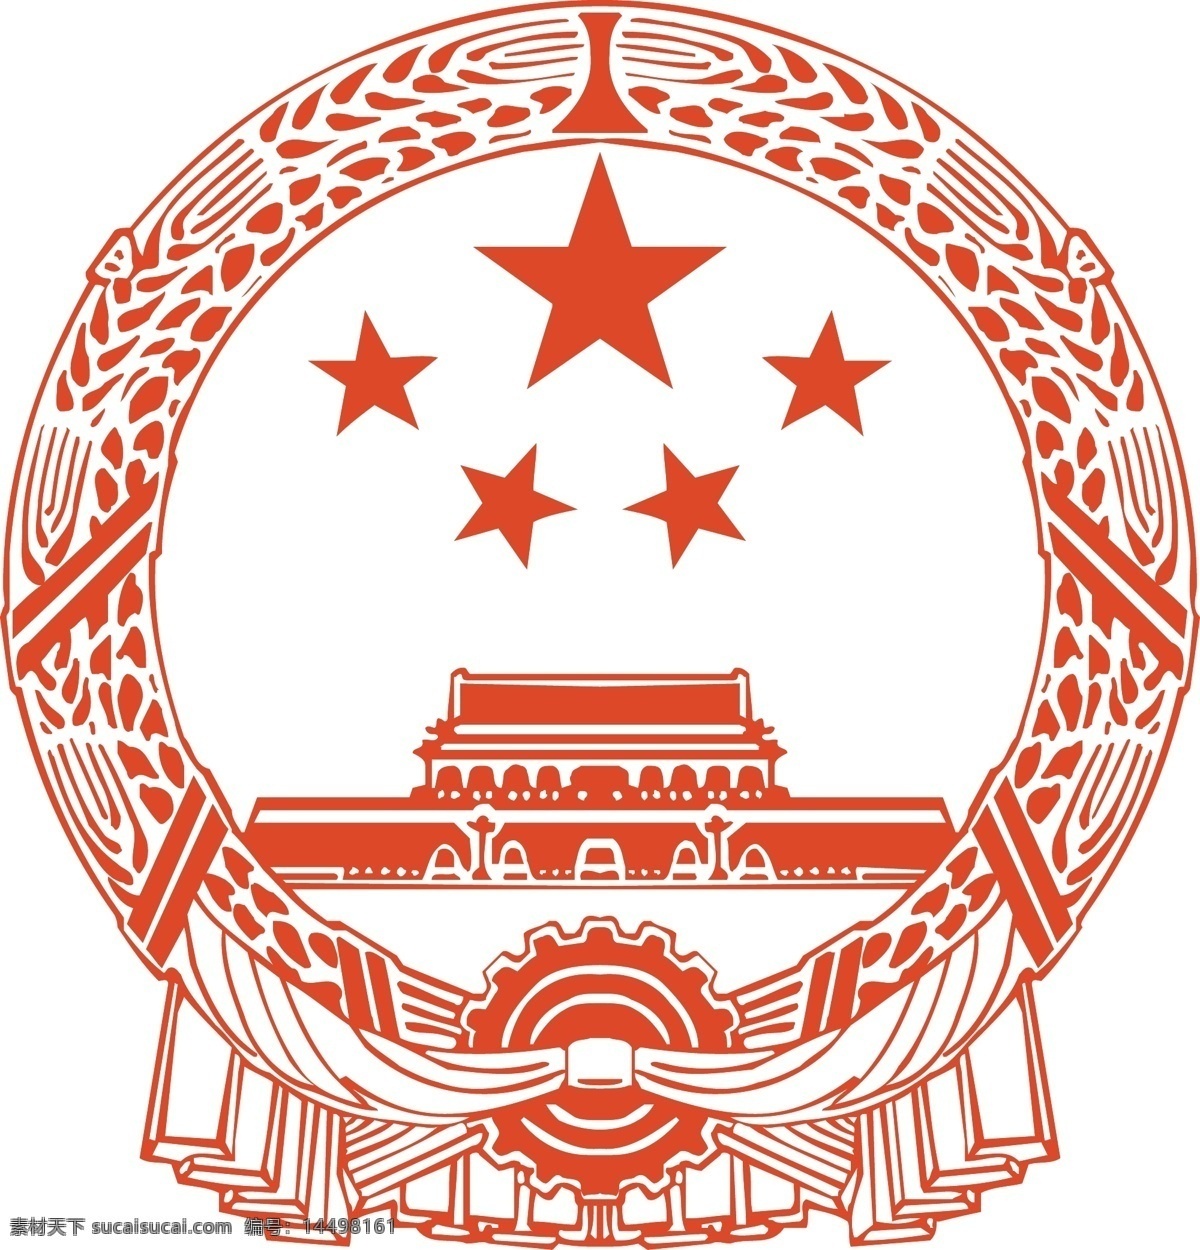 国徽 矢量图 标志 中国国徽 徽标 标志矢量 标志标识 标志图标 公共标识标志